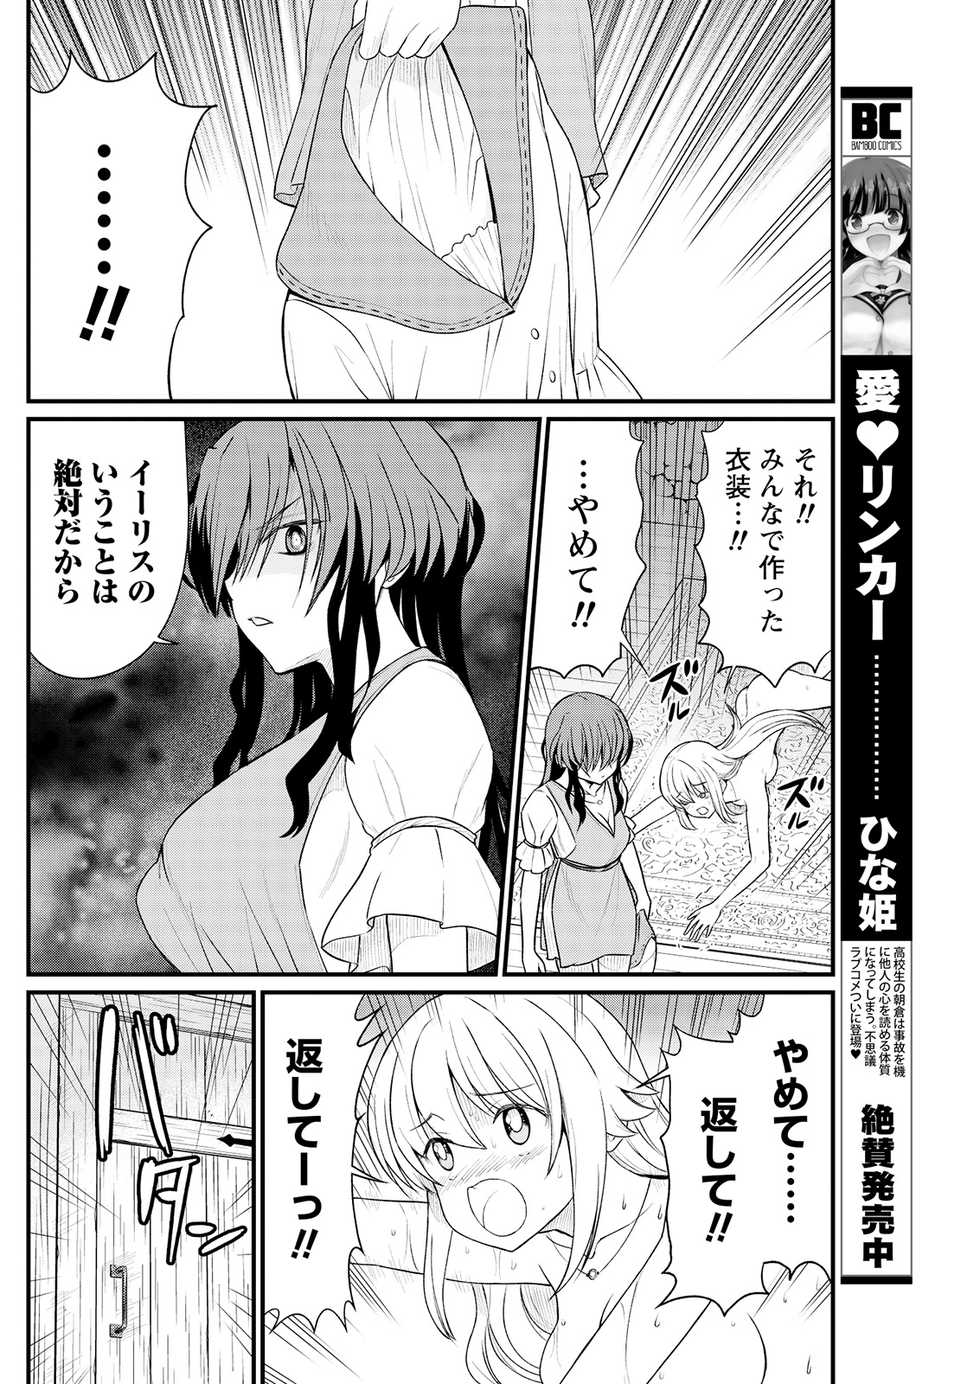 [Hinaki] Kukkorose no Himekishi to nari, Yuri Shoukan de Hataraku koto ni Narimashita. 9 - Page 8